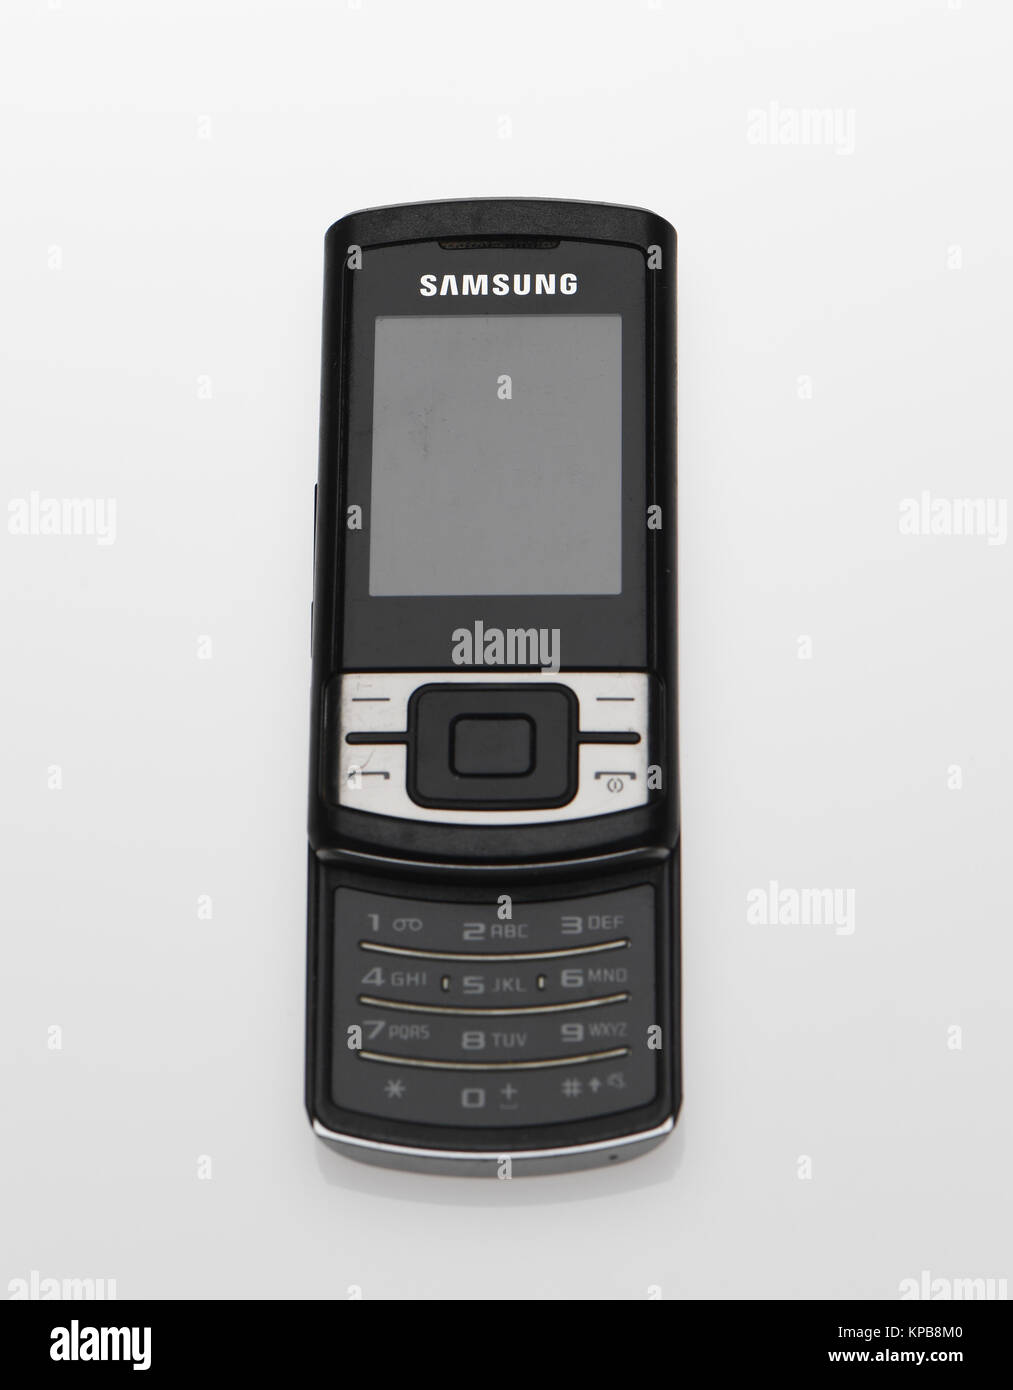 Samsung vecchio immagini e fotografie stock ad alta risoluzione - Alamy